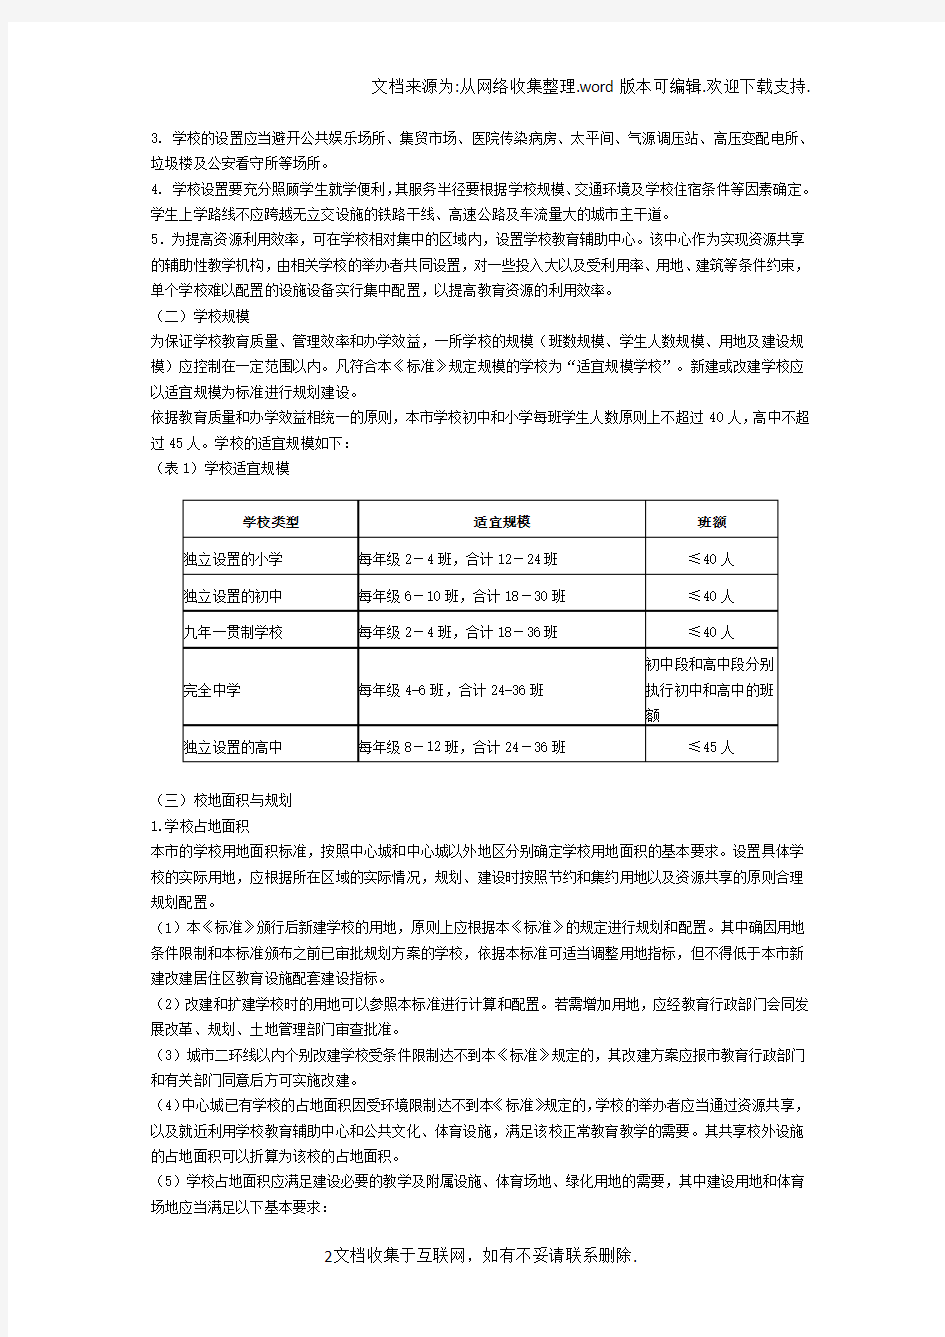 北京市中小学办学条件标准